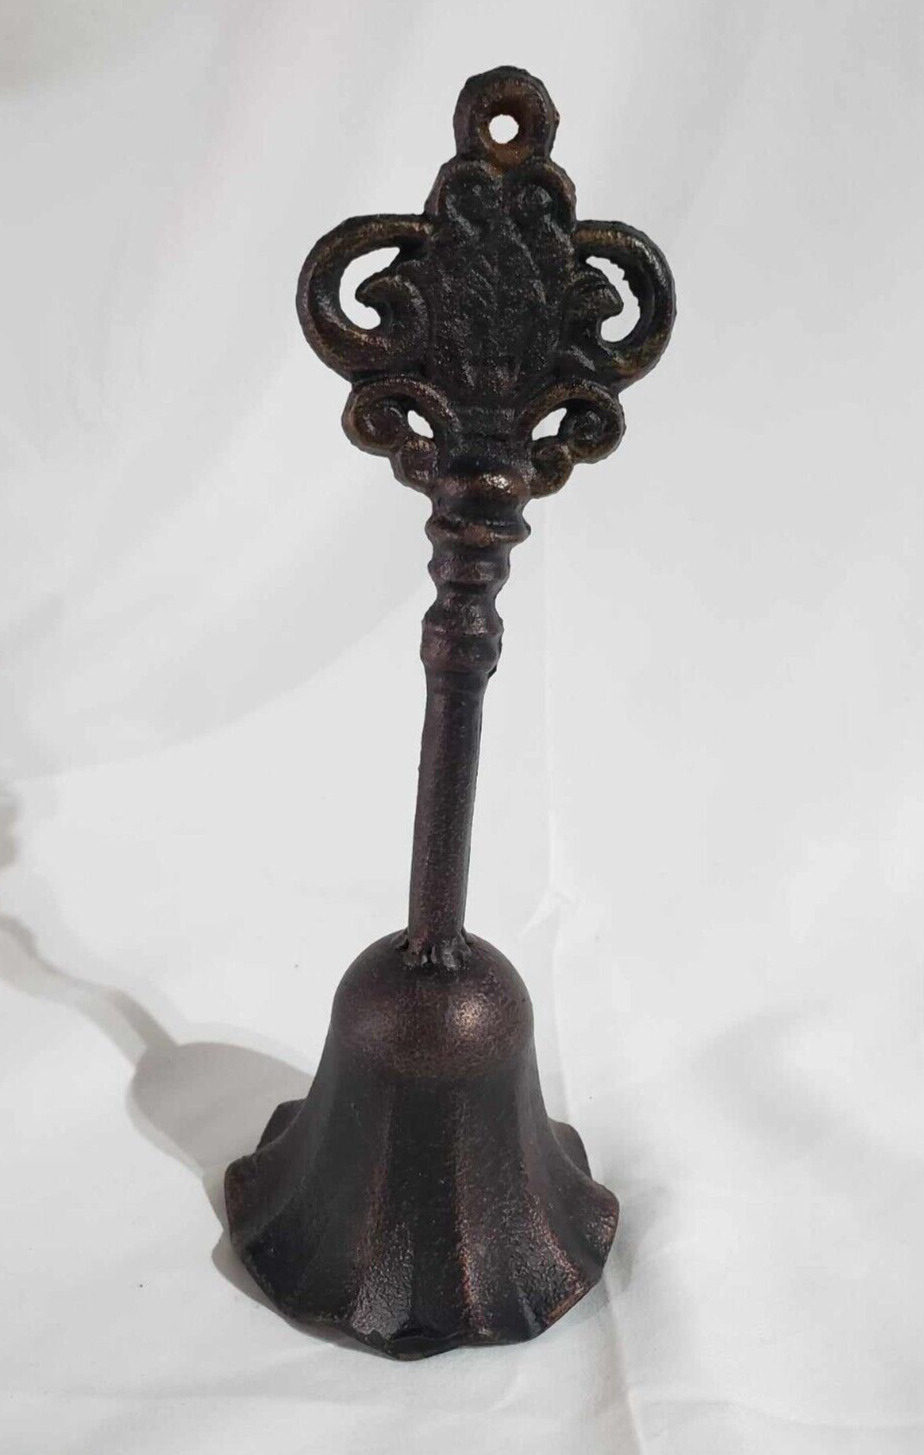 Vintage cast iron handheld bell tabletop décor farmhouse cottagecore collectible